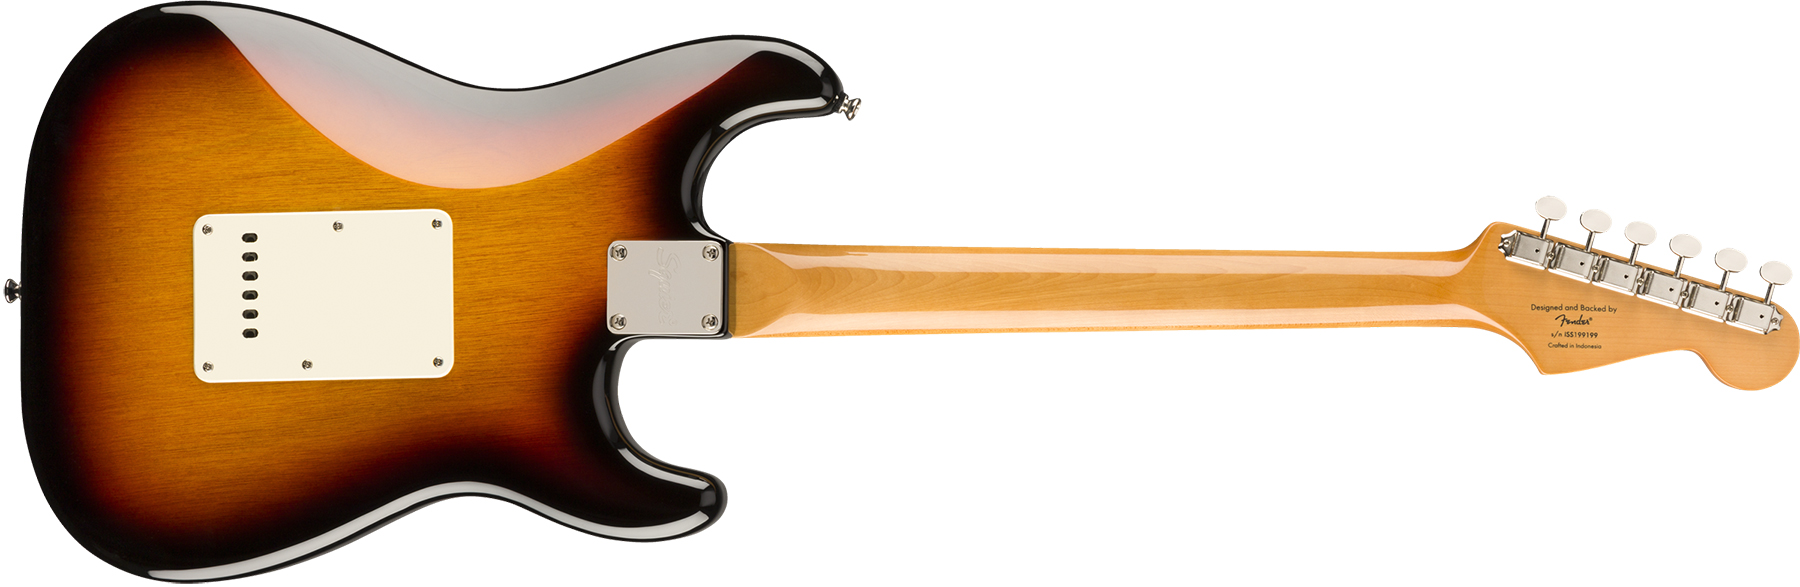 Squier Strat '60s Lh Gaucher Classic Vibe 2019 Lau - 3-color Sunburst - Left-handed electric guitar - Variation 1